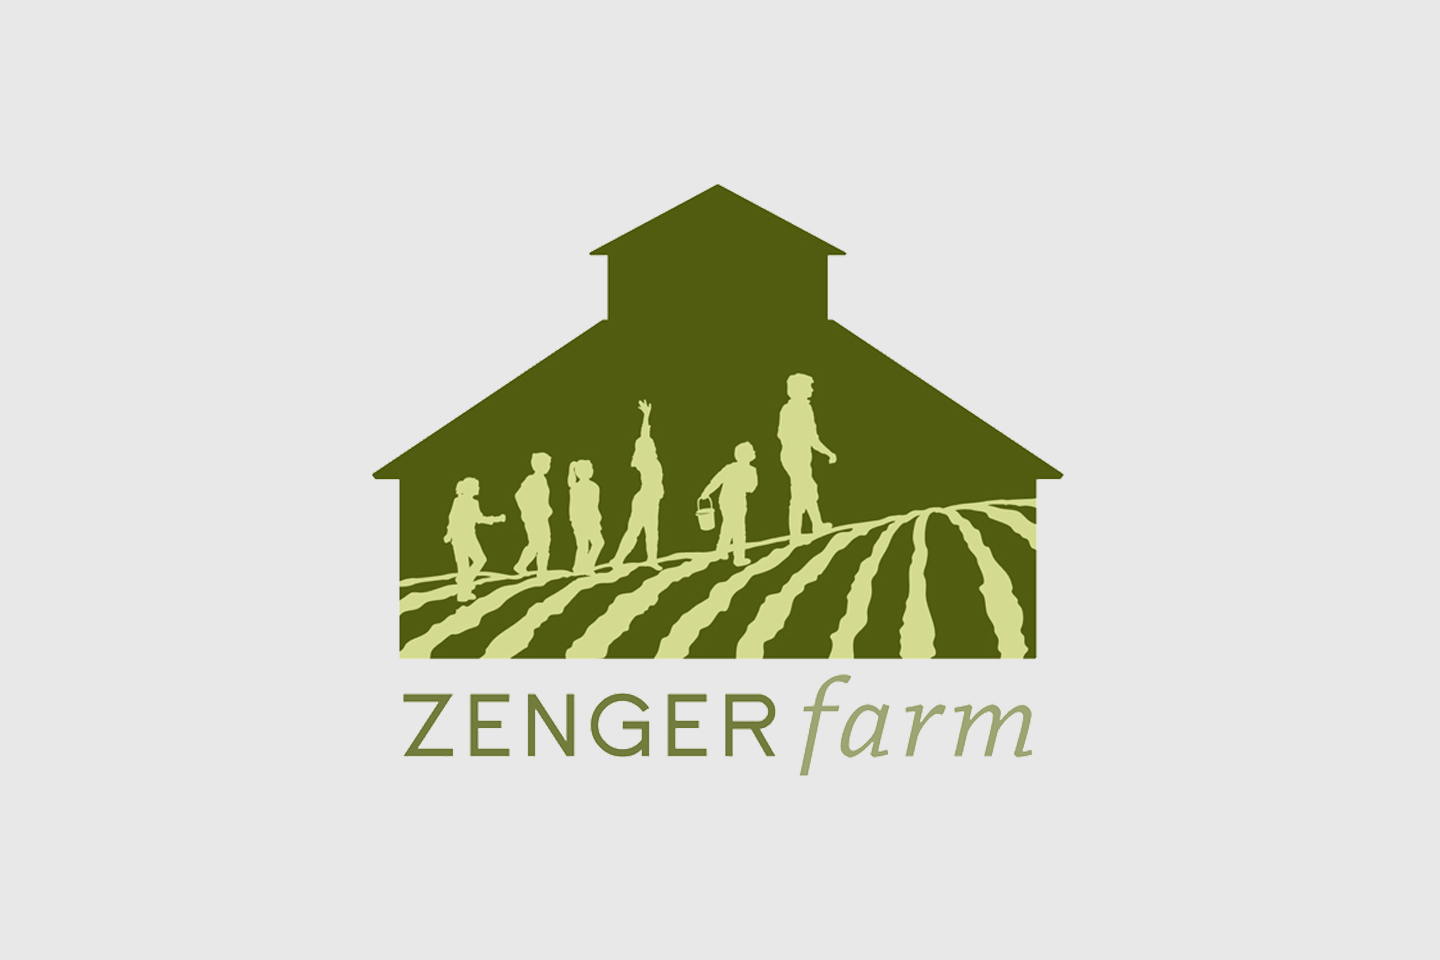 Zenger Farm logo